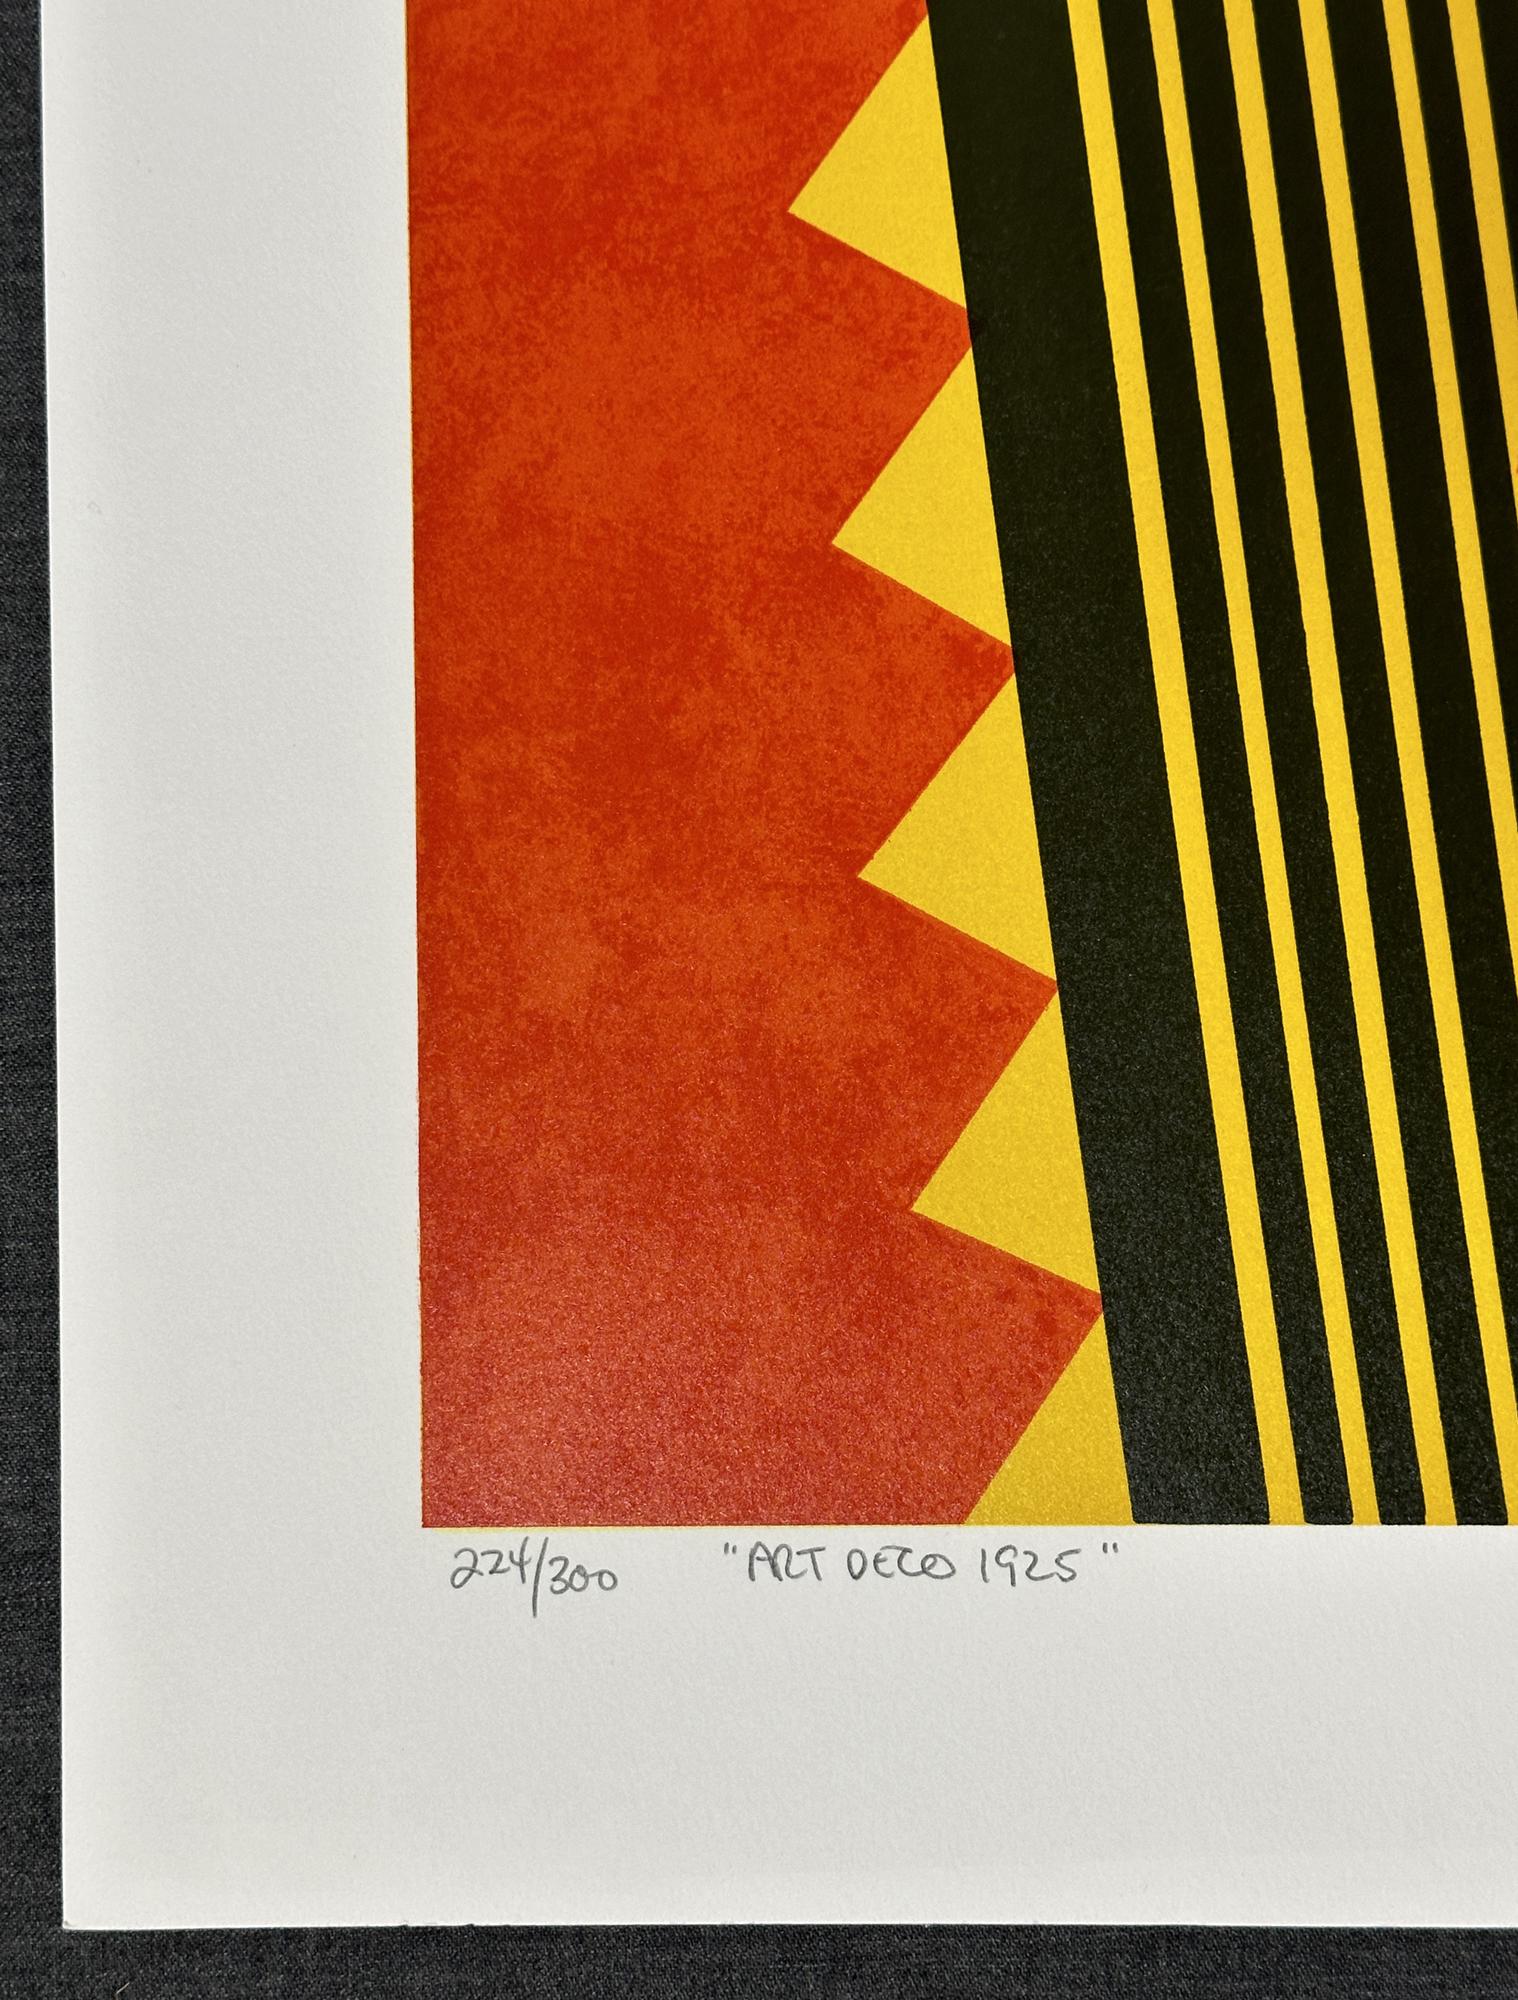 Art déco 1925
1980
Sérigraphie
Format du papier 33½